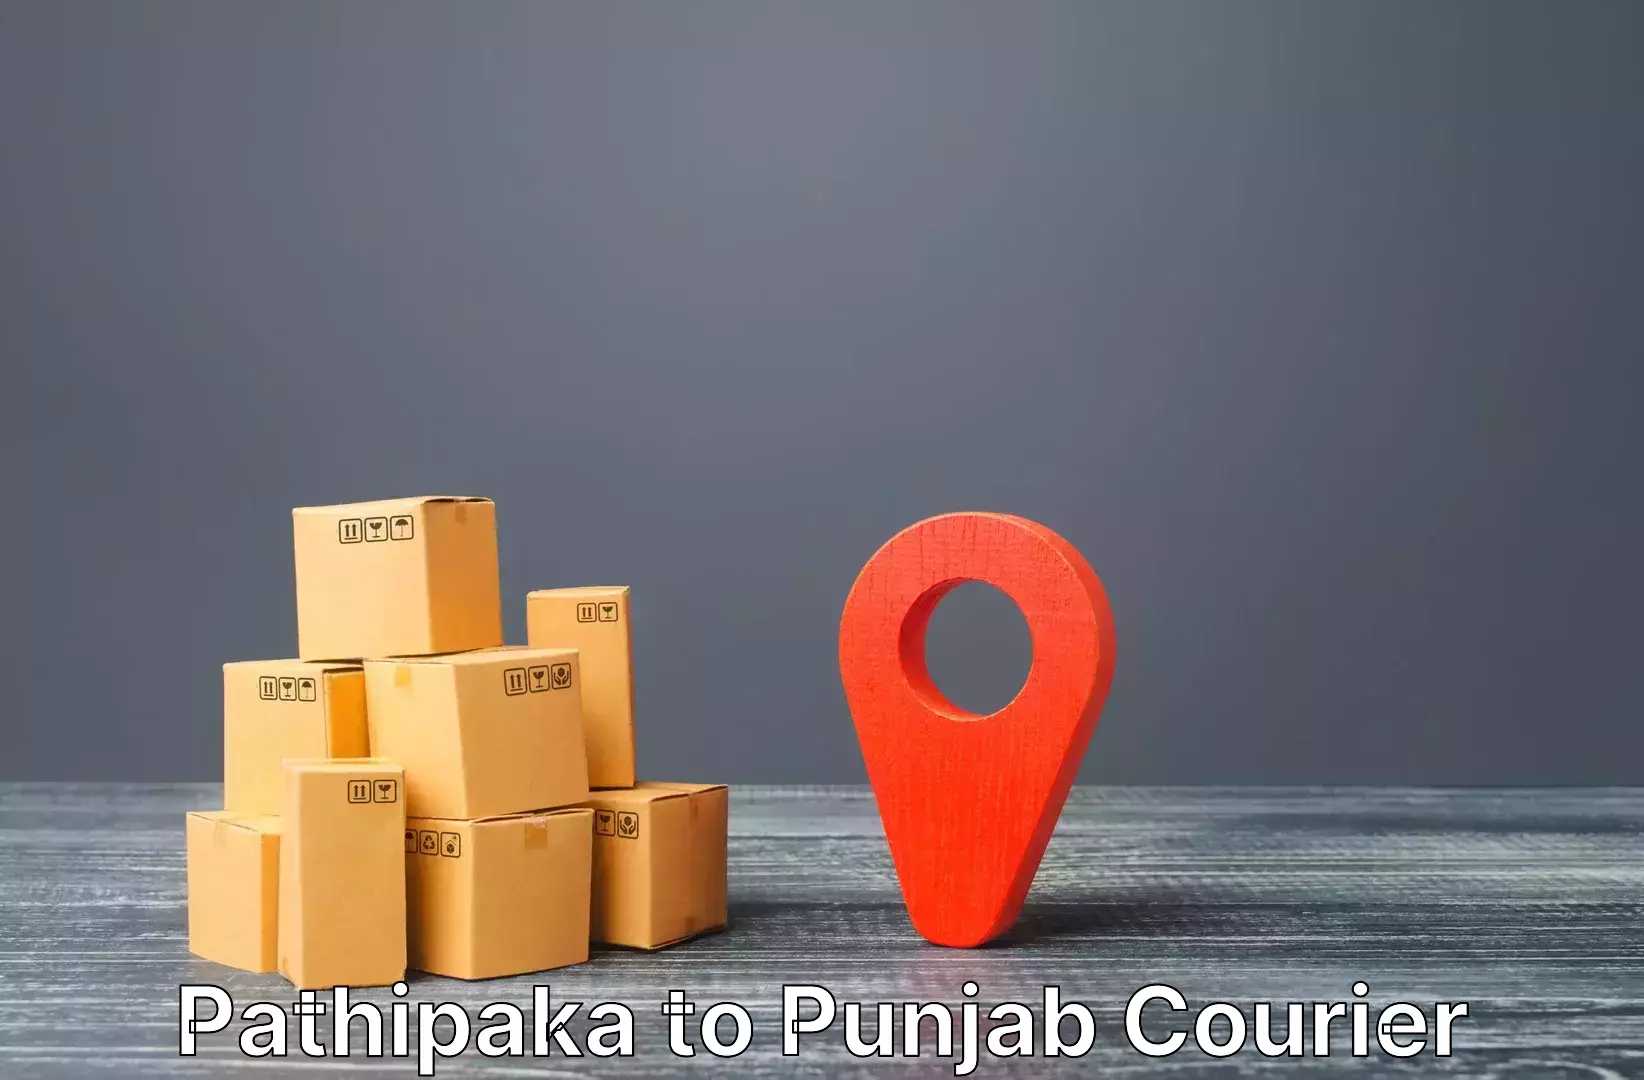 Luggage transport company Pathipaka to Punjab